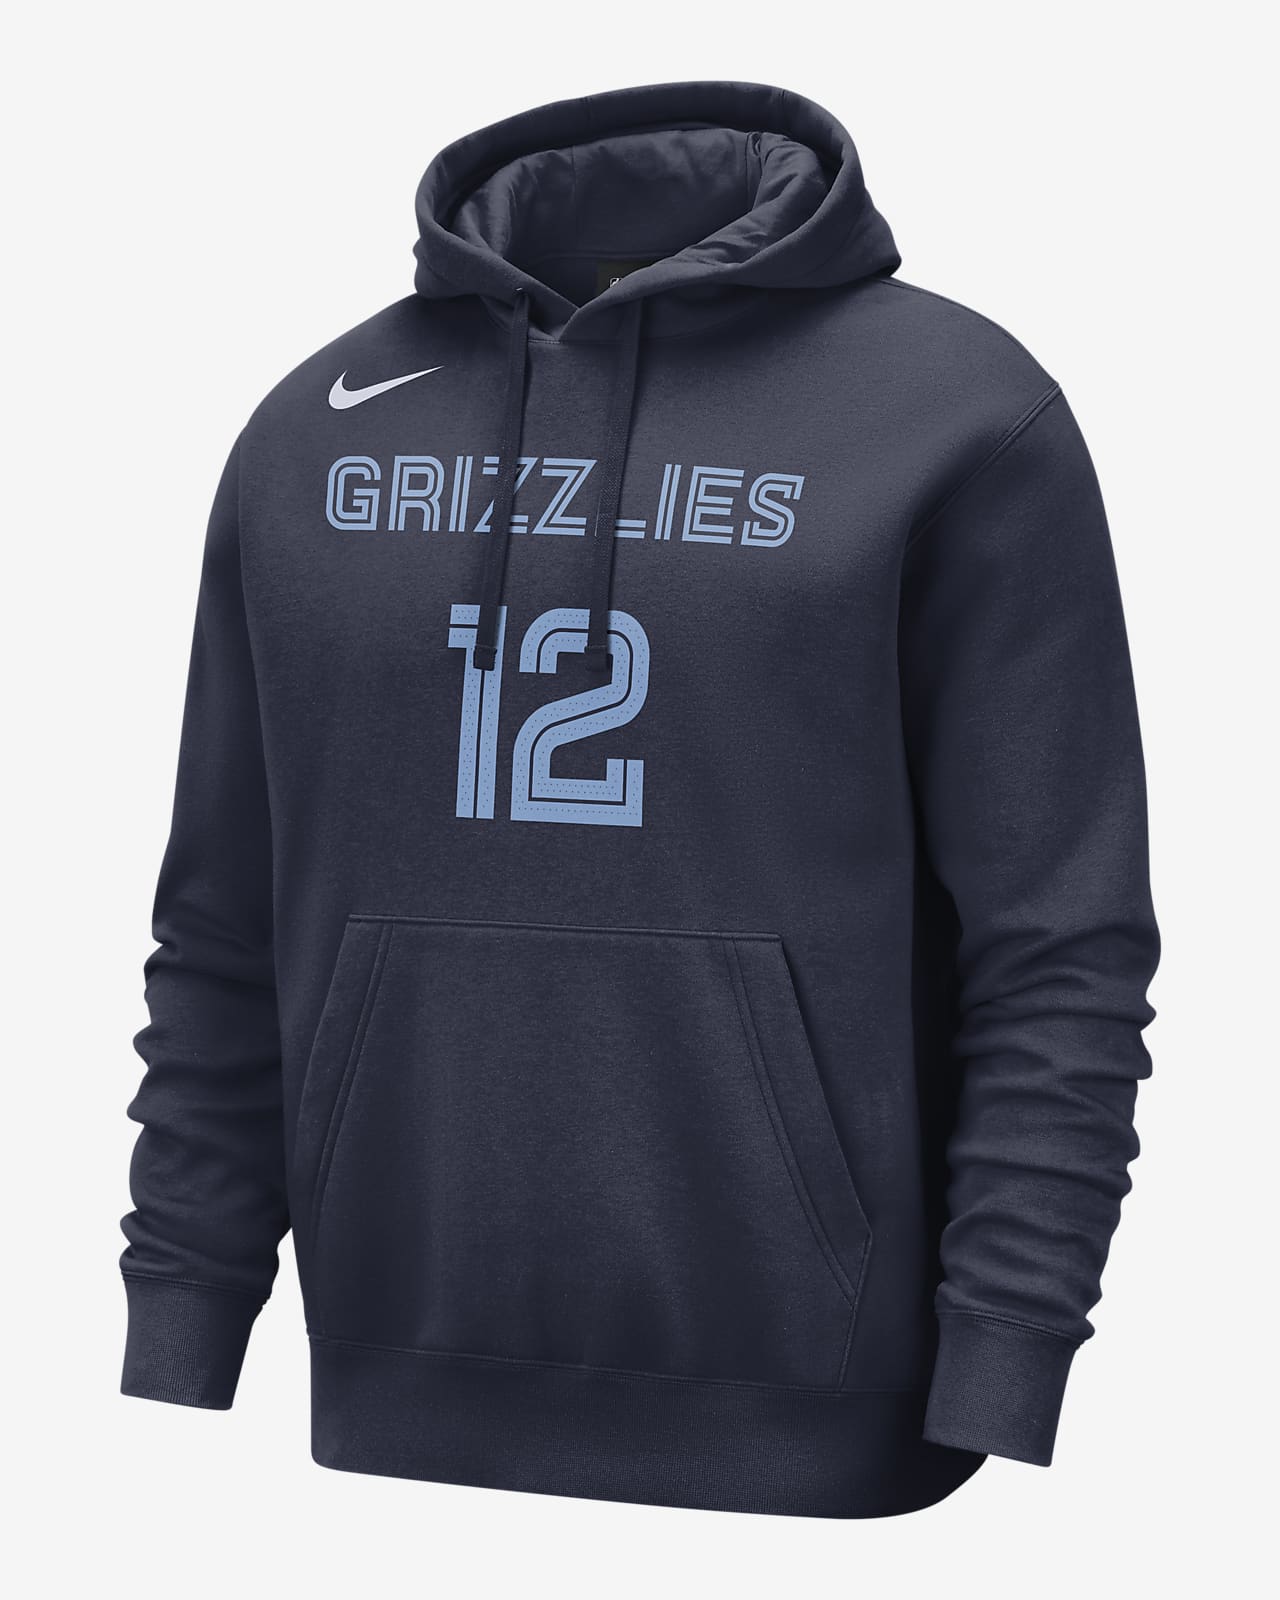 grizzlies basketball sweatshirt